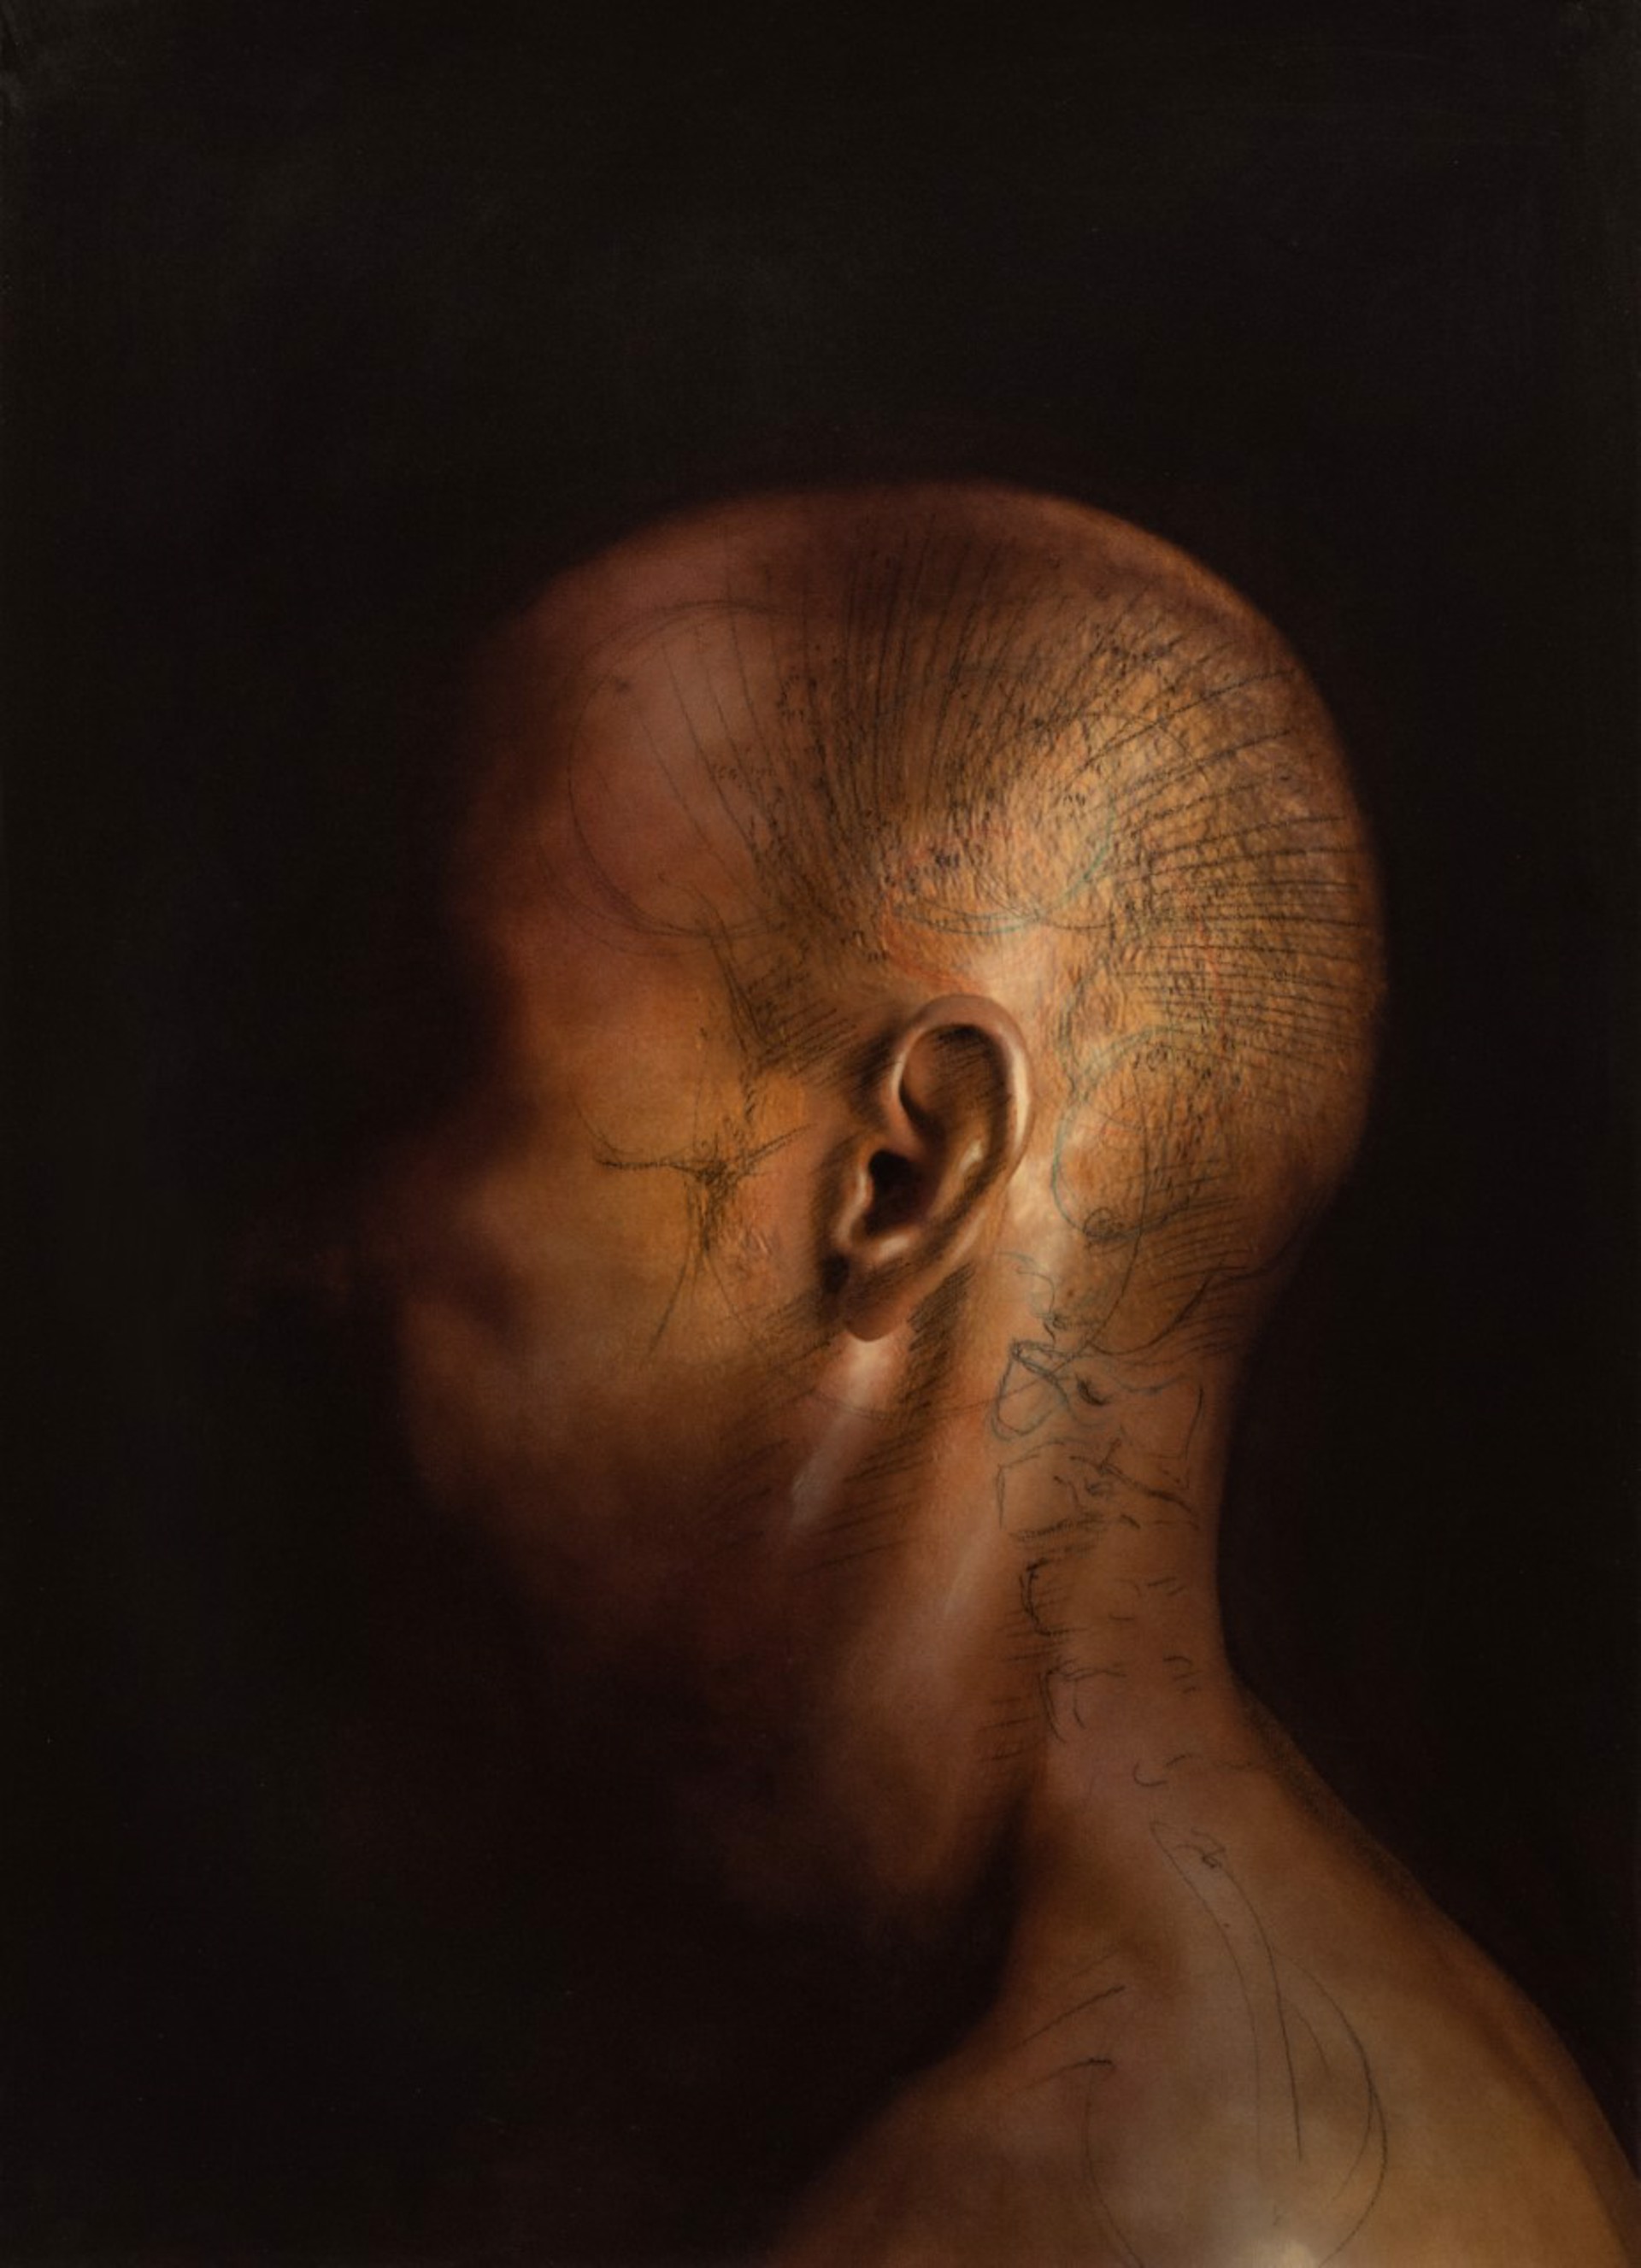 Self Portrait in Shadow by Patrick McKinnon